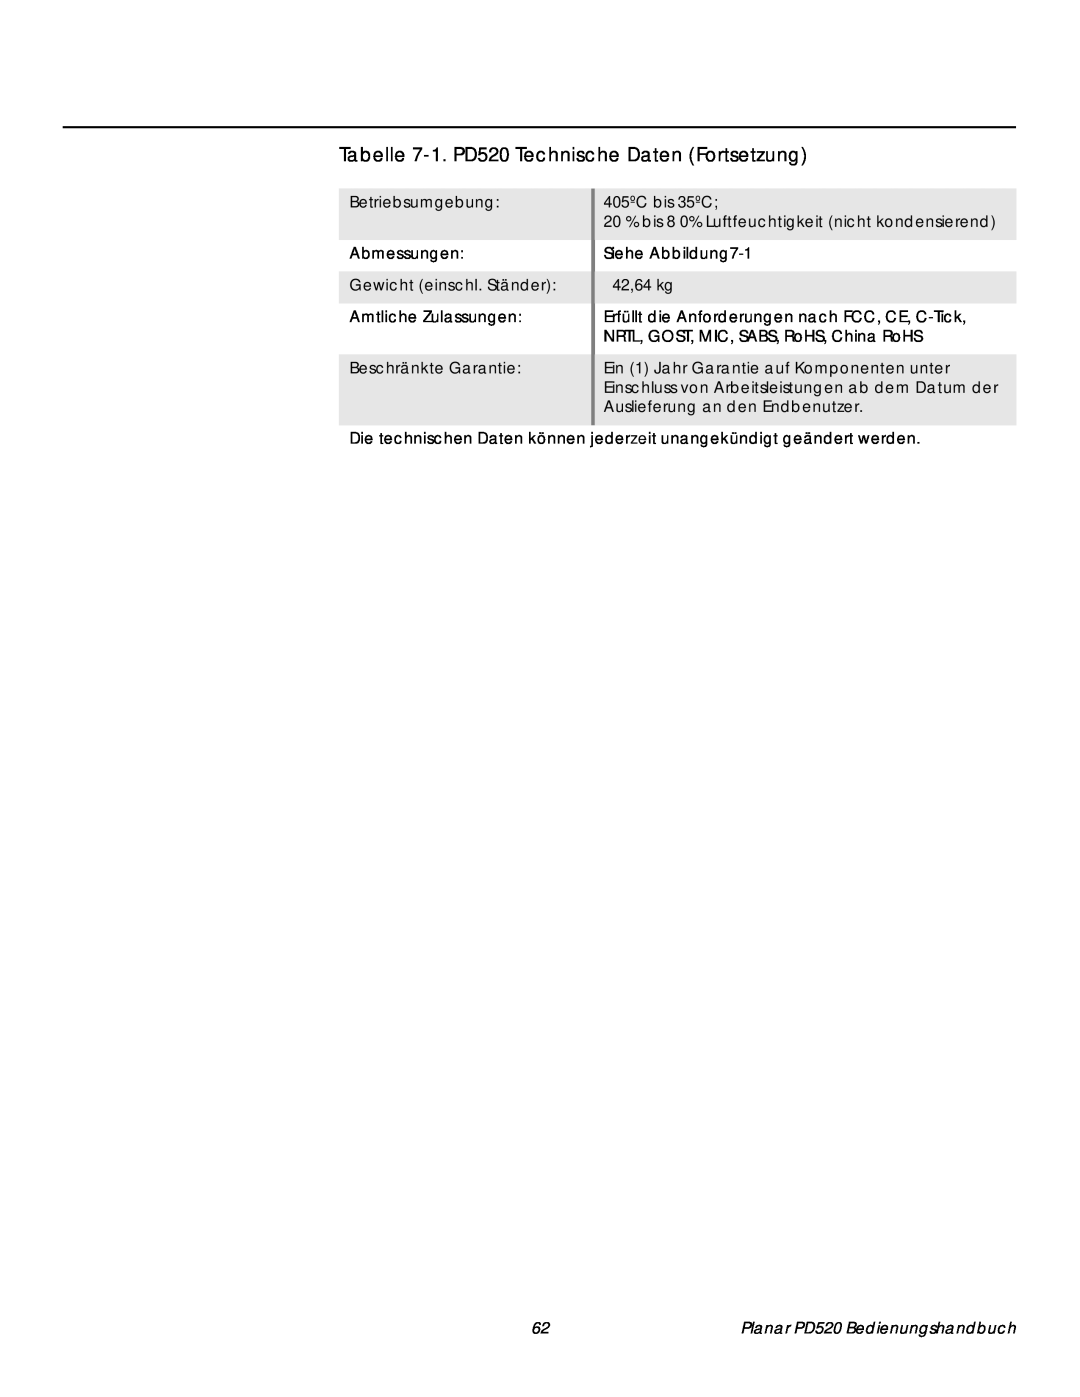 Planar manual Tabelle 7-1.PD520 Technische Daten Fortsetzung, Betriebsumgebung Abmessungen, Beschränkte Garantie 